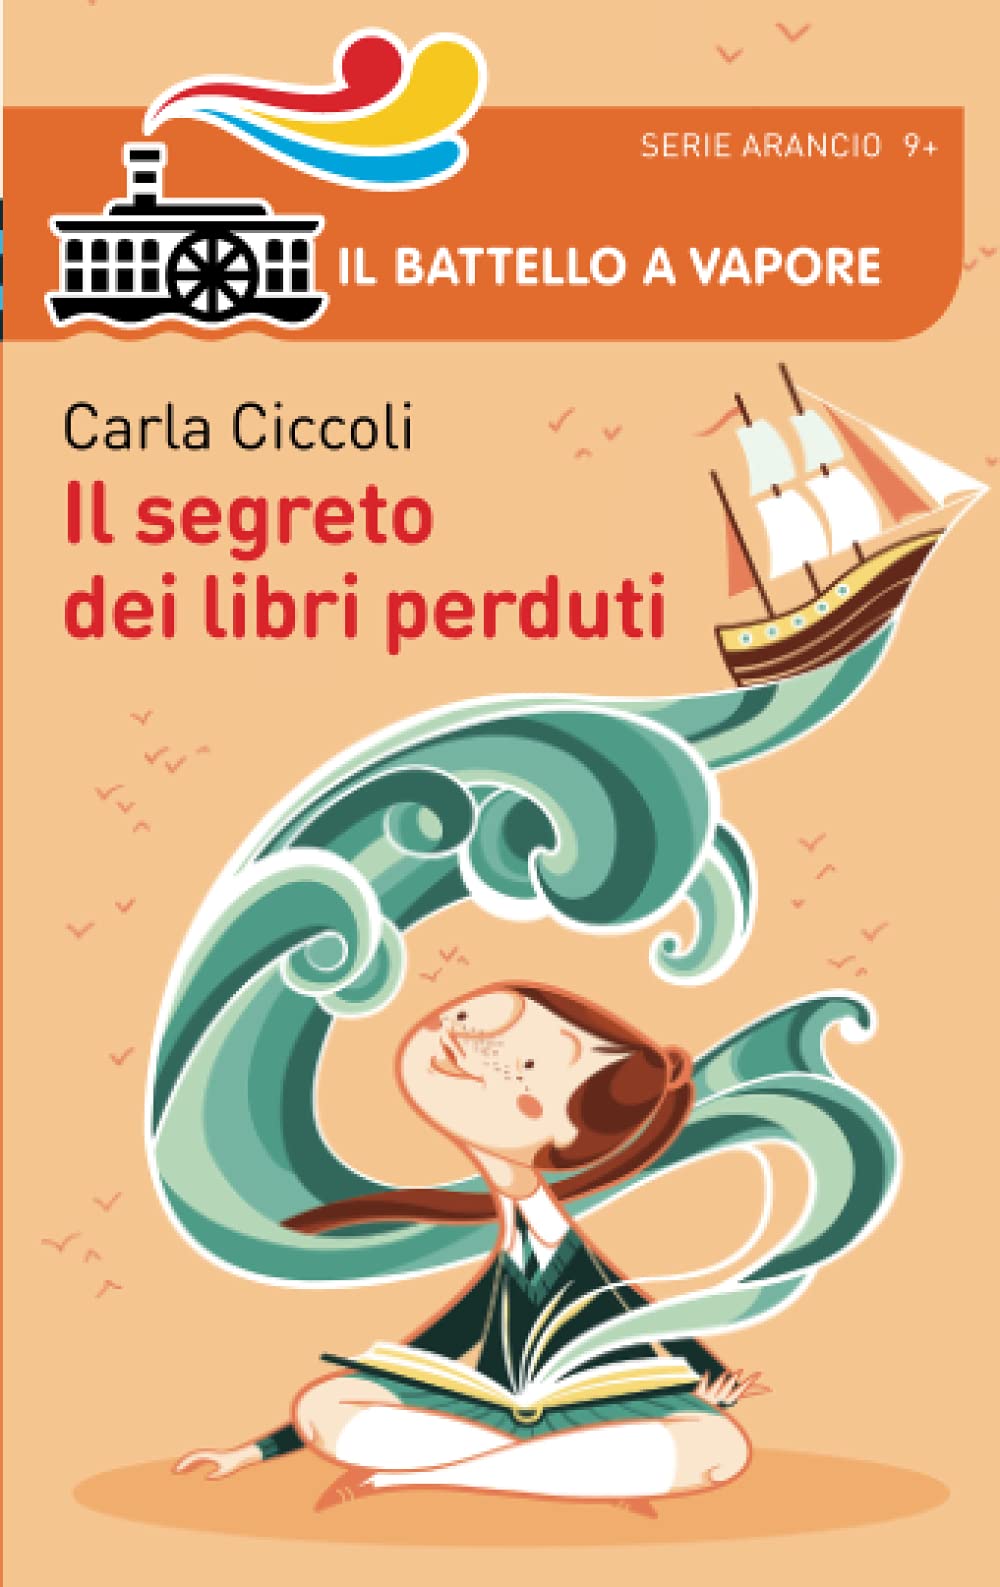 Ciccoli C. (2015). Il segreto dei libri perduti. Piemme